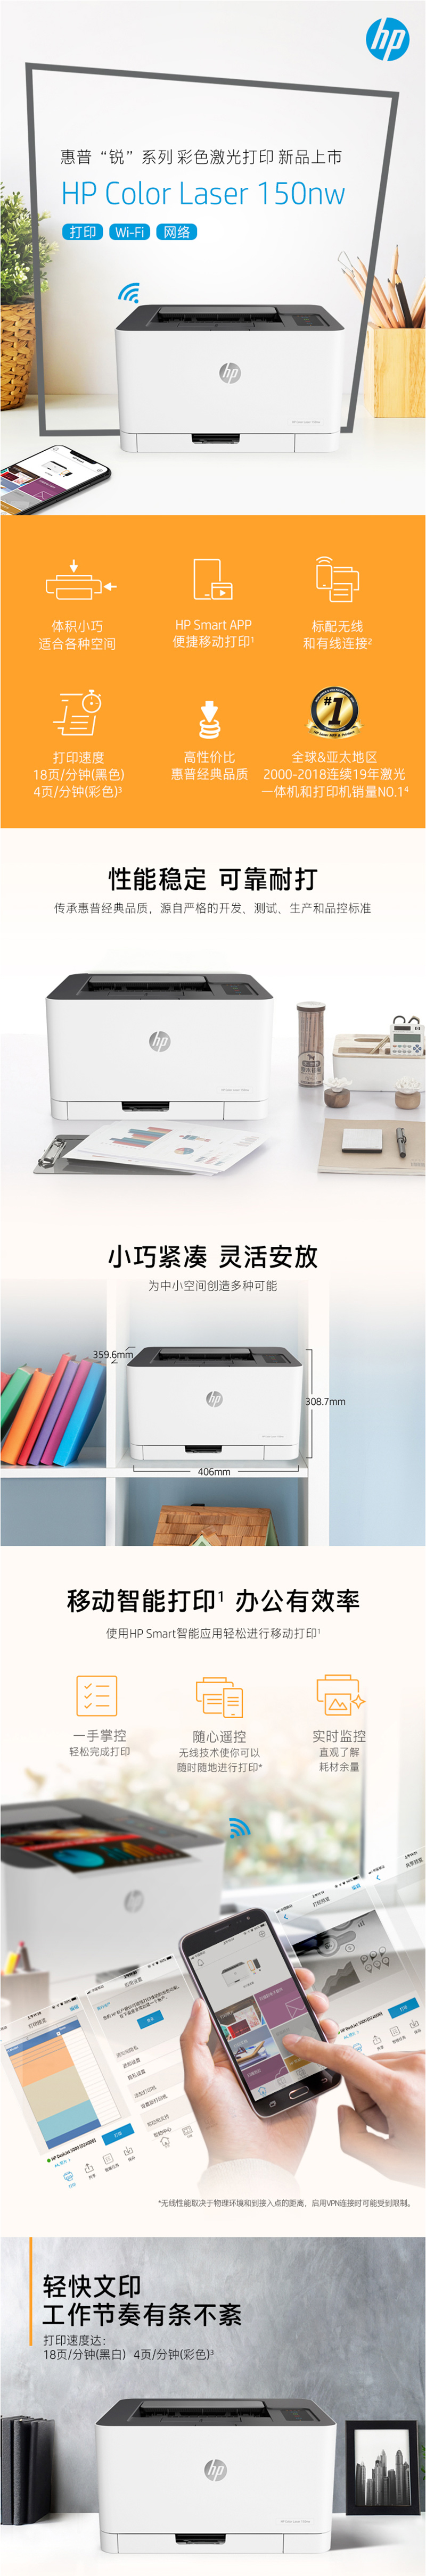 惠普150nw 激光打印机